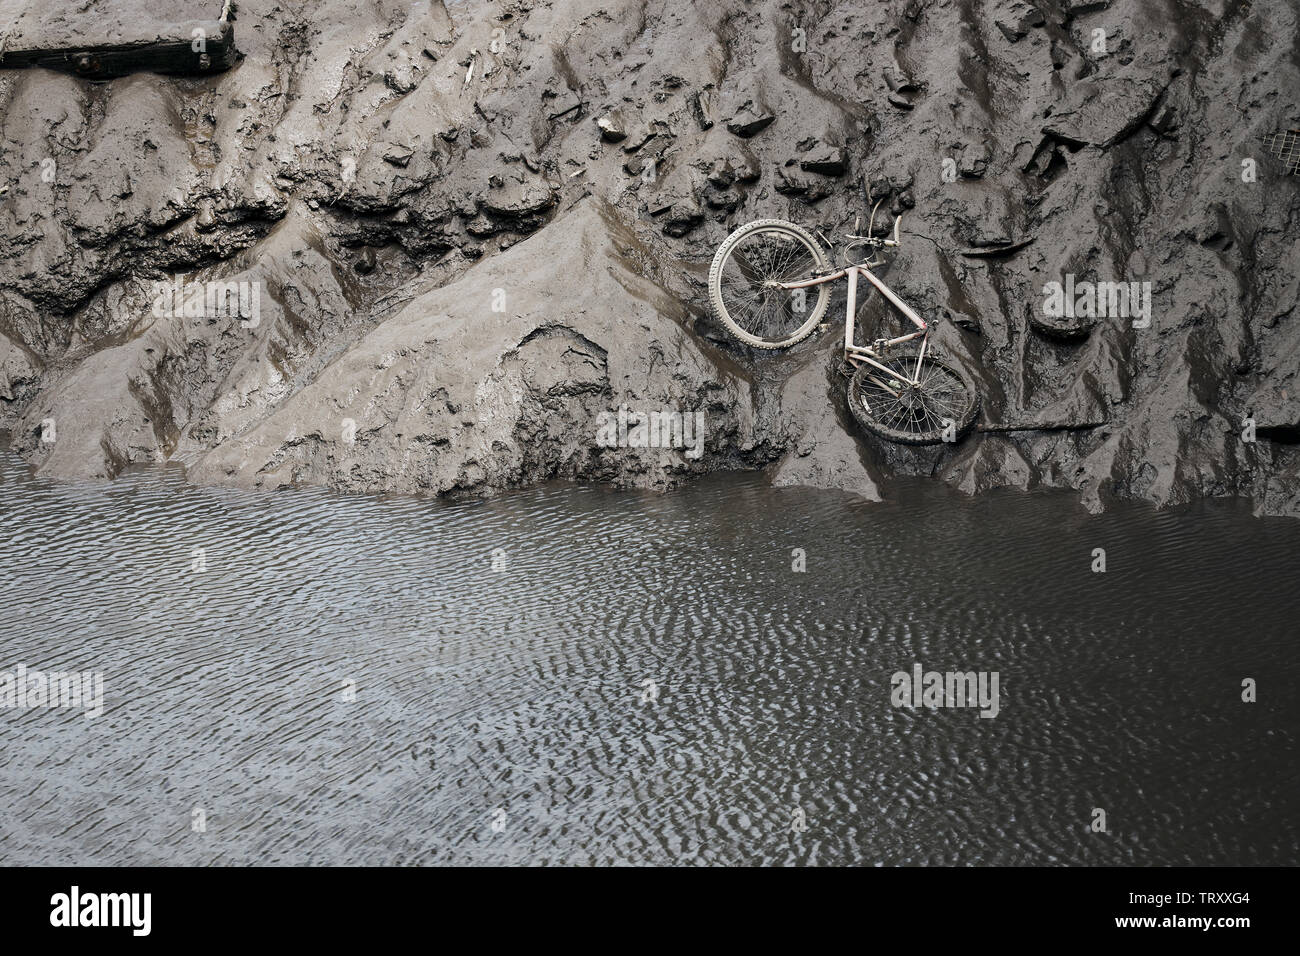 Ein verlassenes Fahrrad- und andere Ablagerungen auf dem schlammigen Ufer des Flusses Team bei Ebbe ausgesetzt Stockfoto